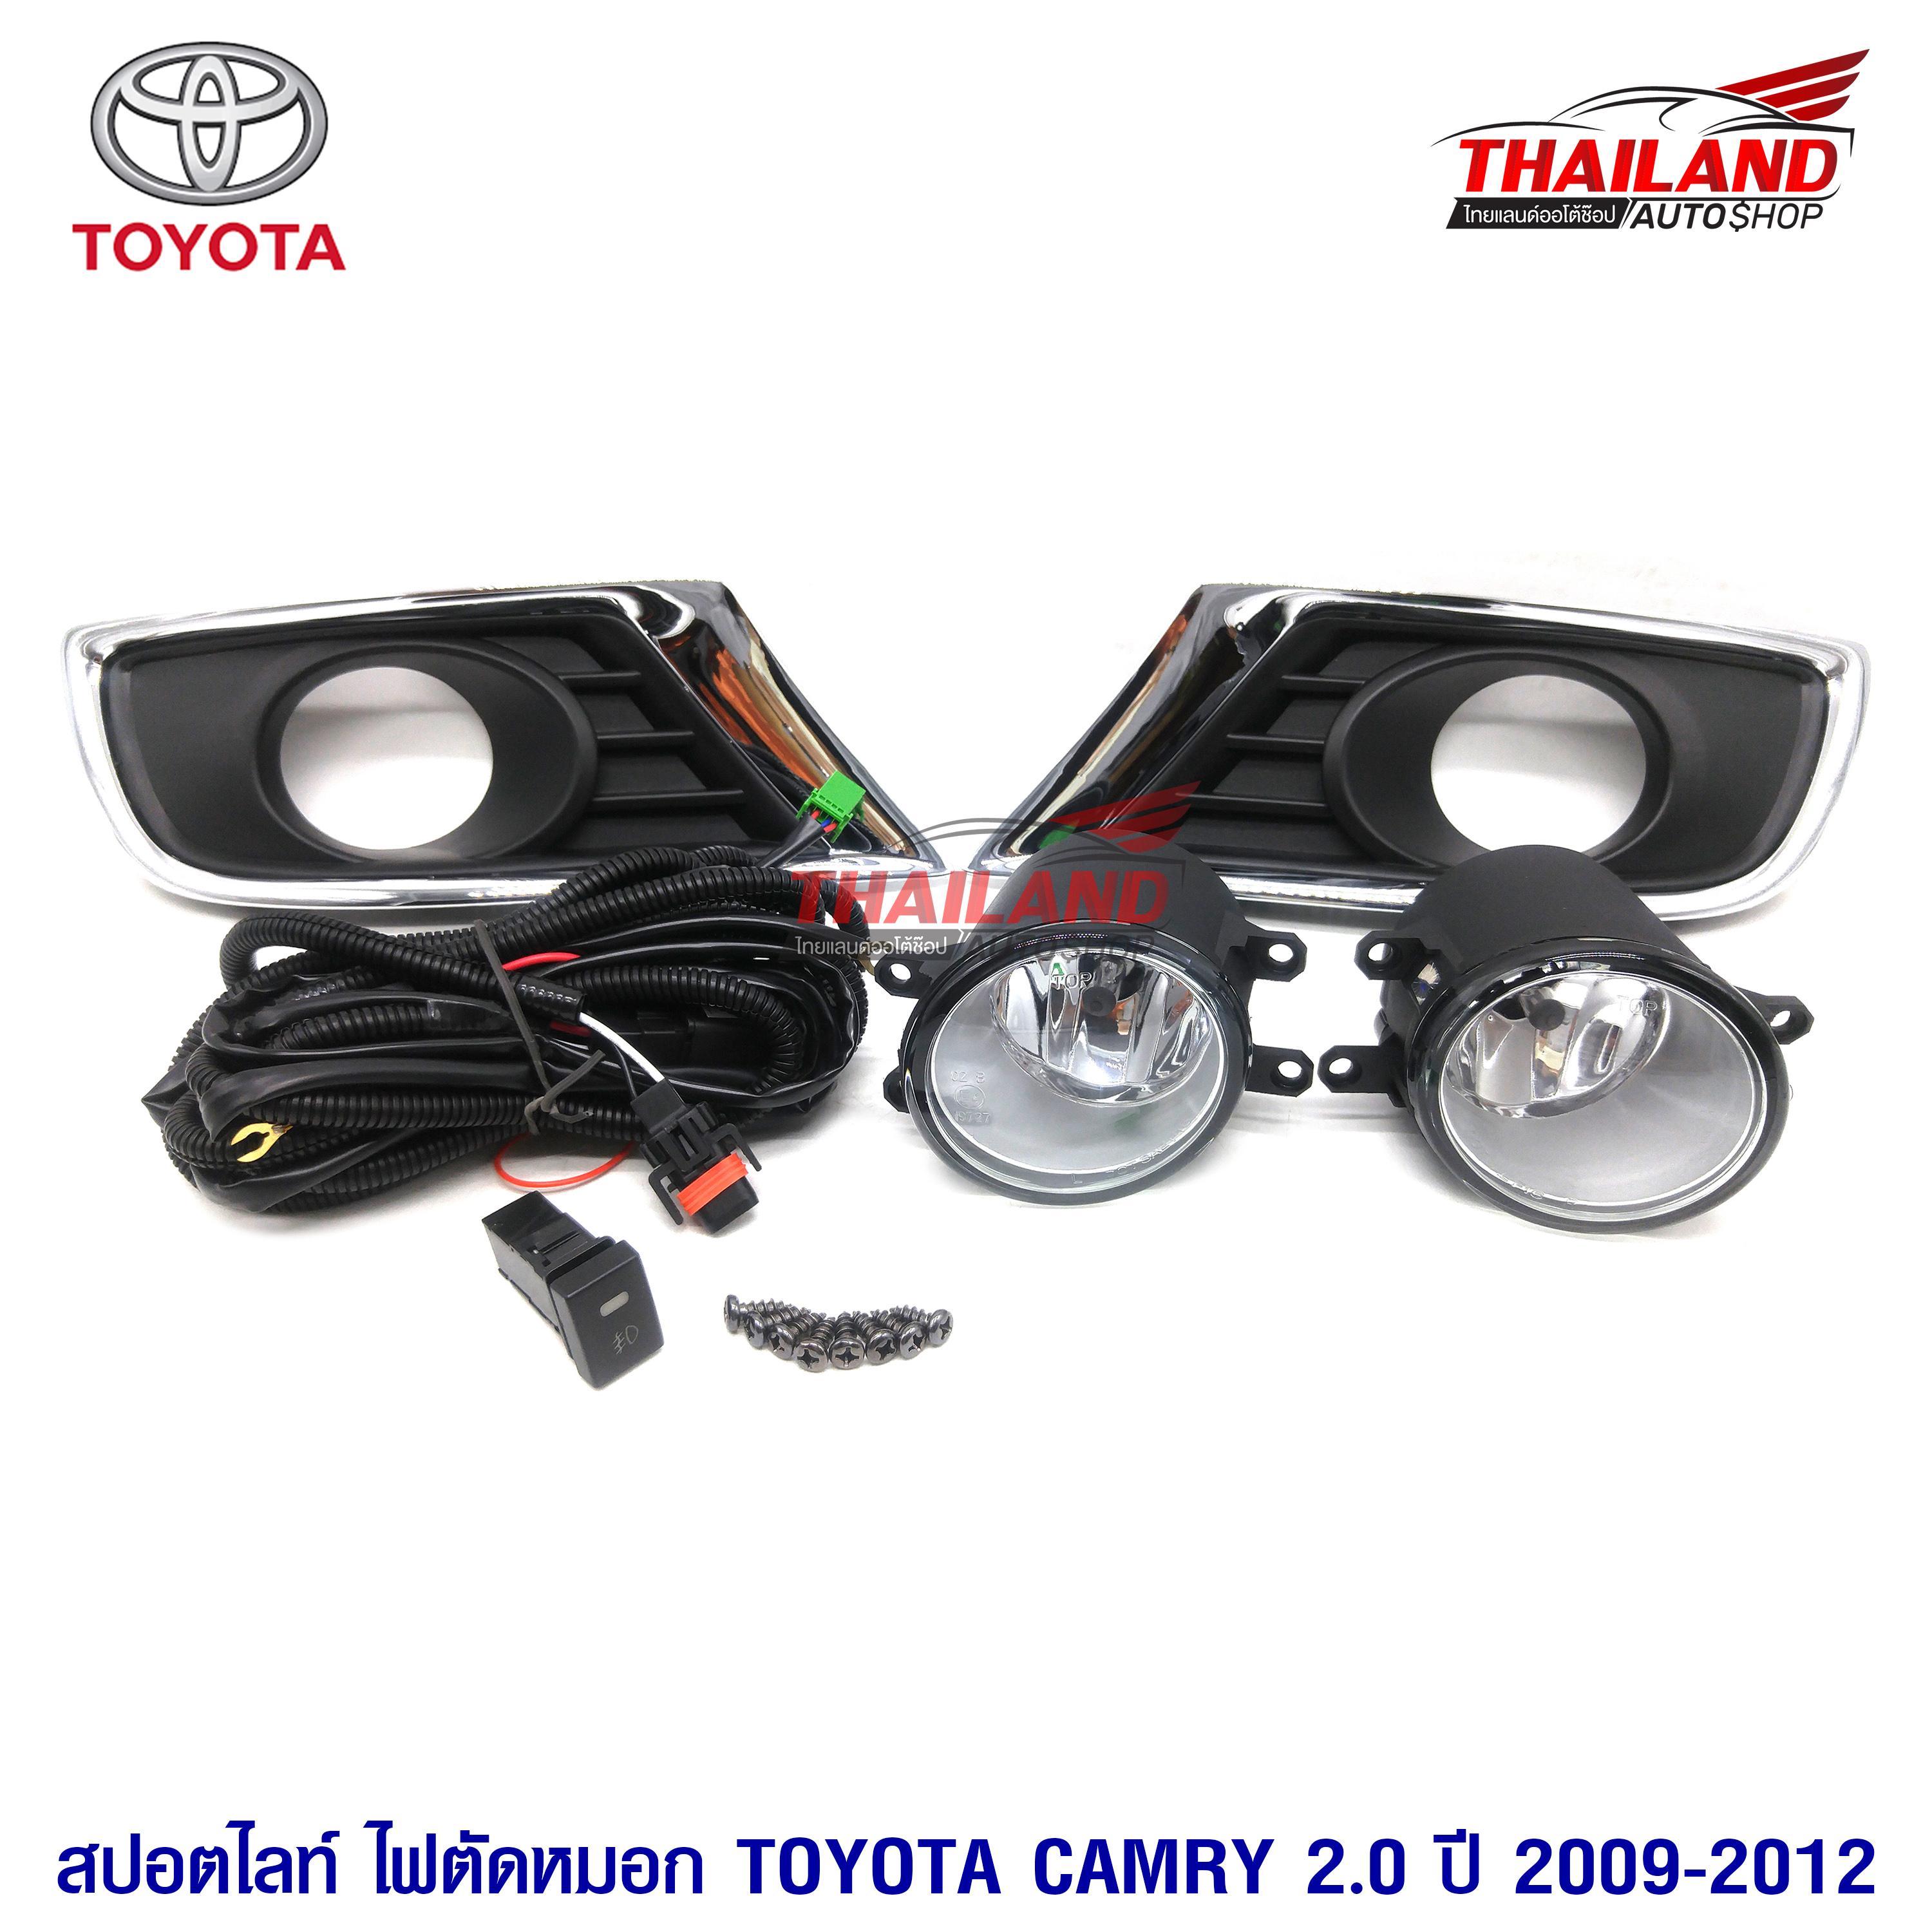 ไฟตัดหมอก ไฟสปอร์ตไลท์ สำหรับ Toyota Camry 2.0 ปี 2009-2012 มาพร้อมชุดสายไฟ 1 ชุด